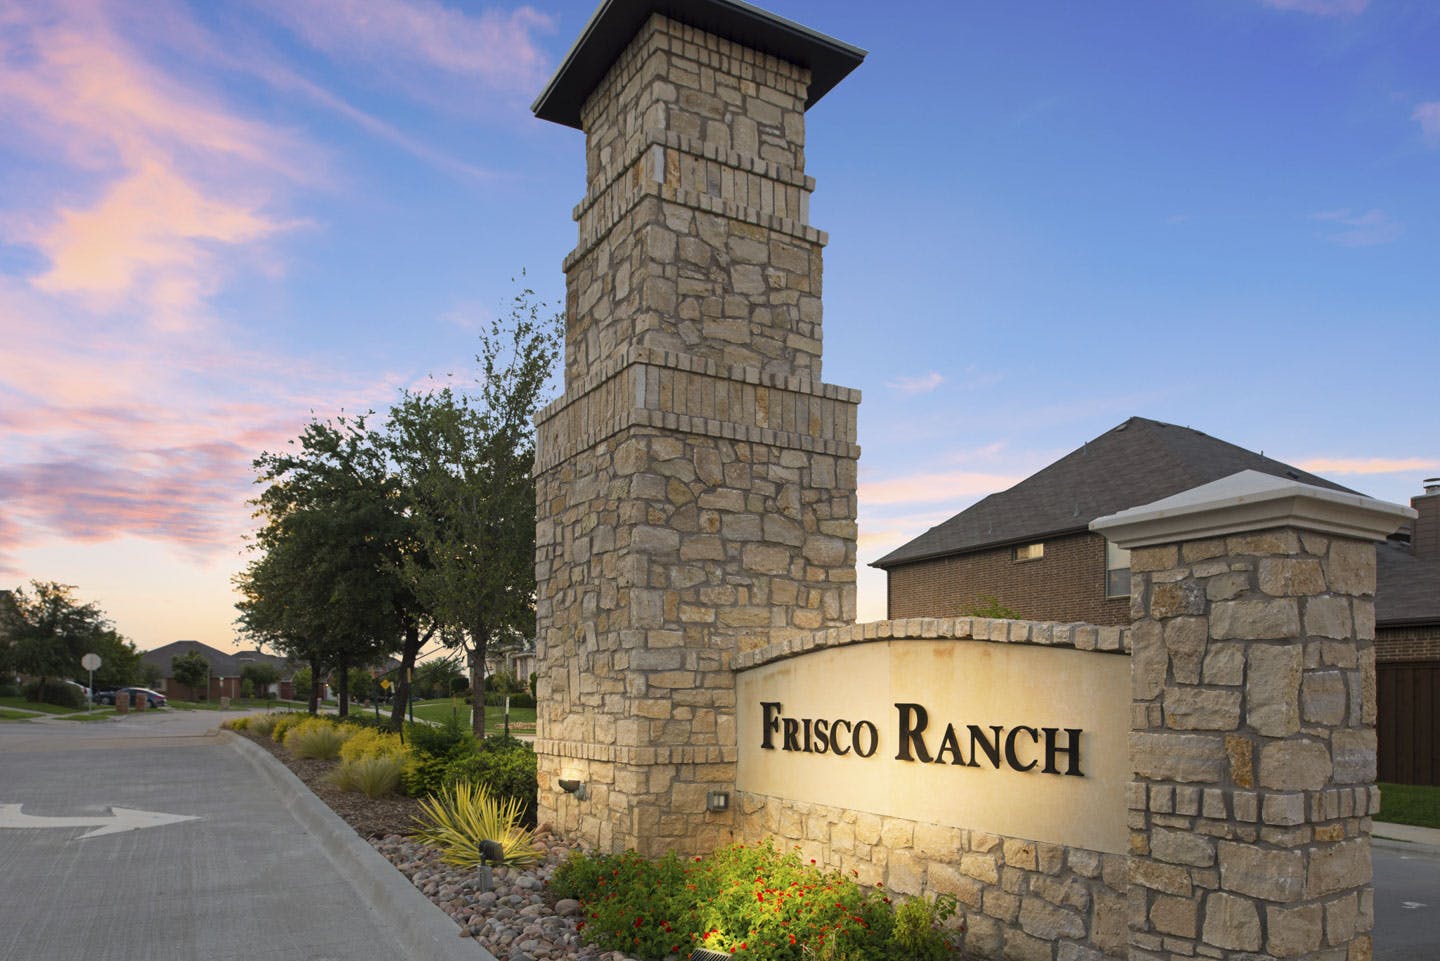 Frisco ranch